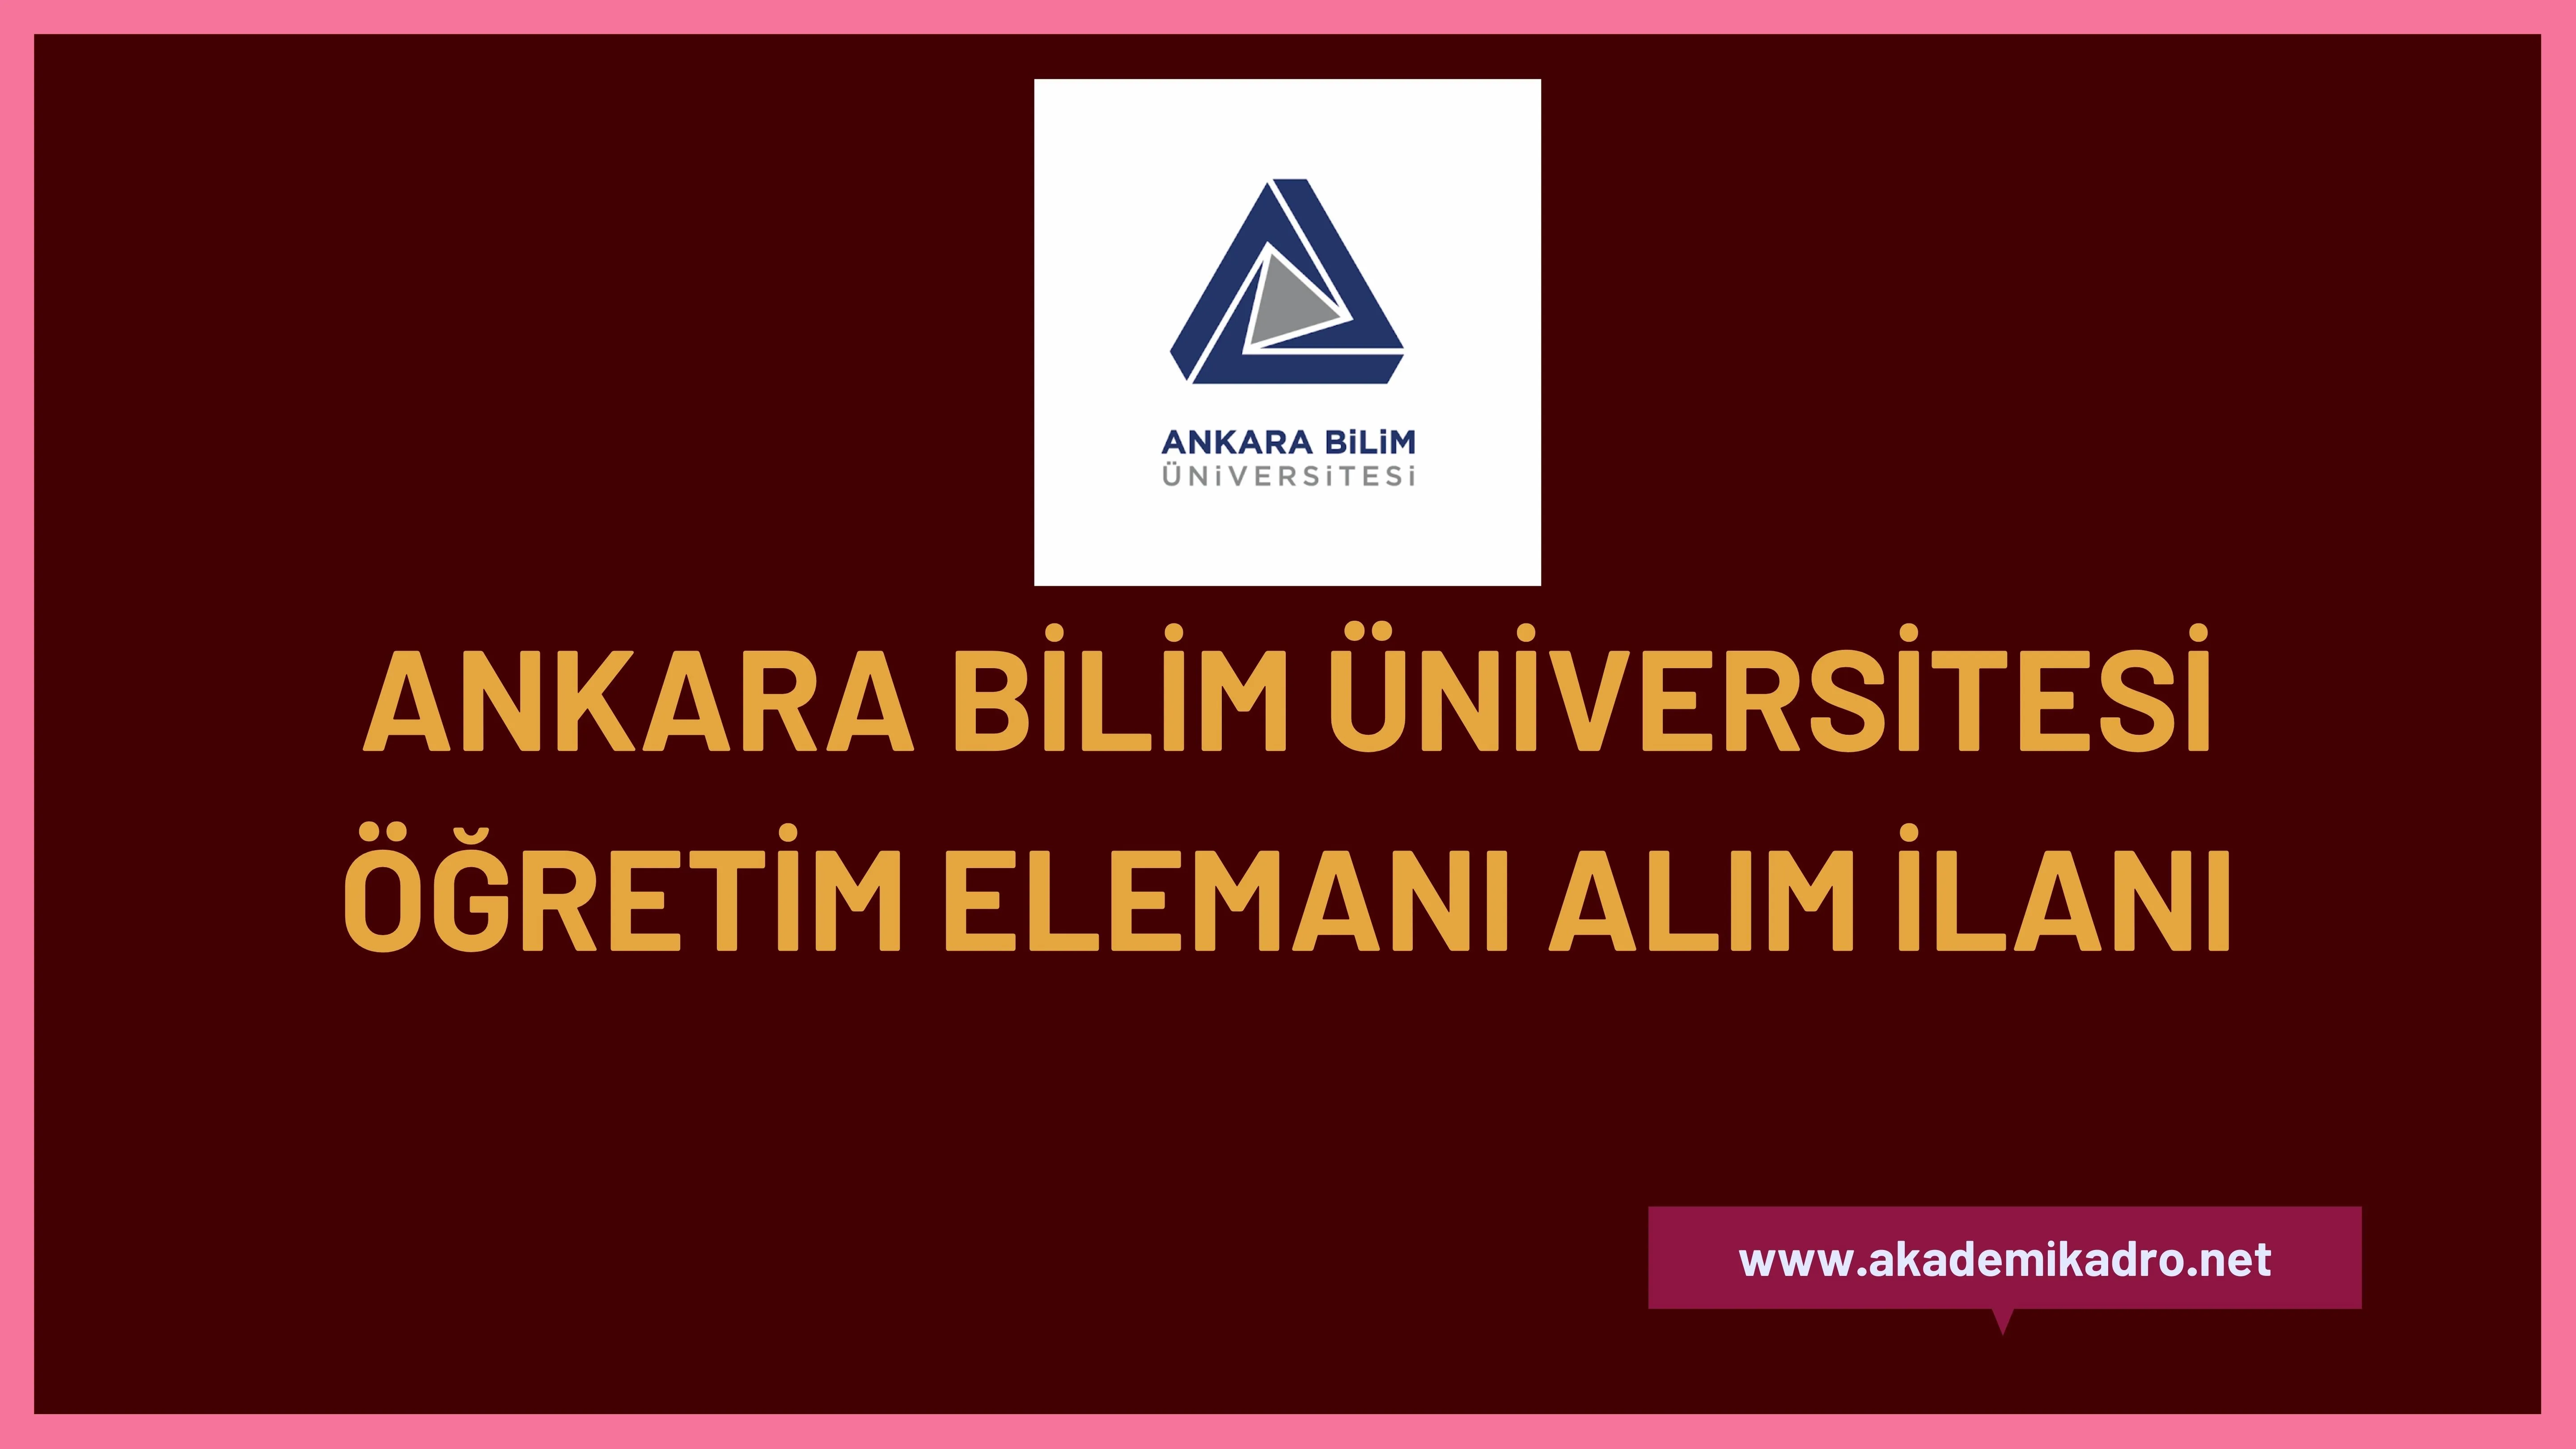 Ankara Bilim Üniversitesi Araştırma görevlisi ve Öğretim üyesi olmak üzere 6 Öğretim elemanı alacak.